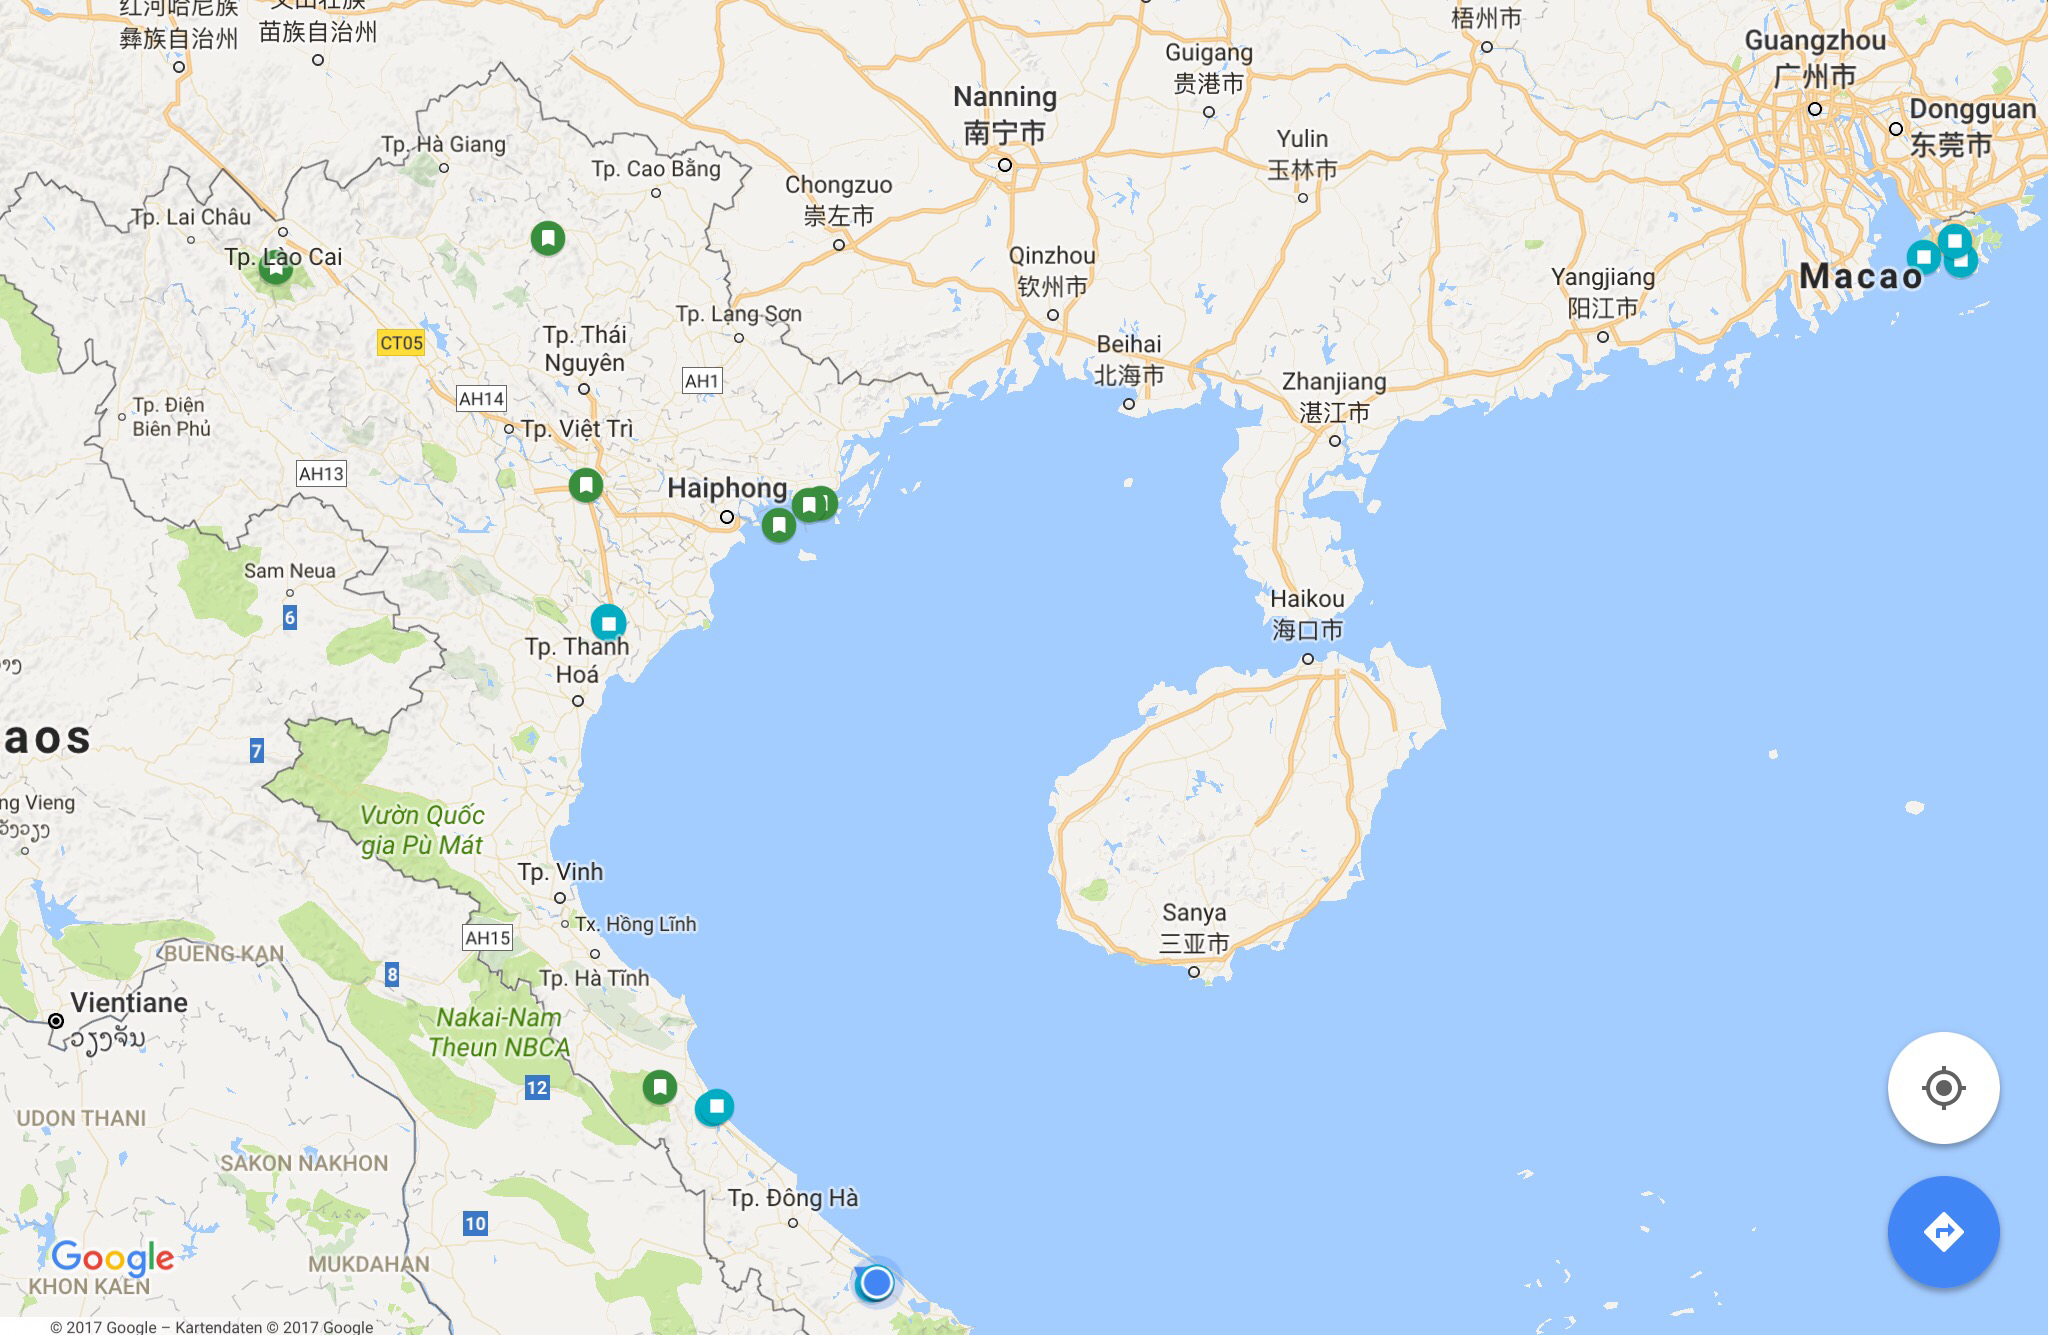 Die Stationen im Norden Vietnams - Sapa ist ganz im Nordwesten.